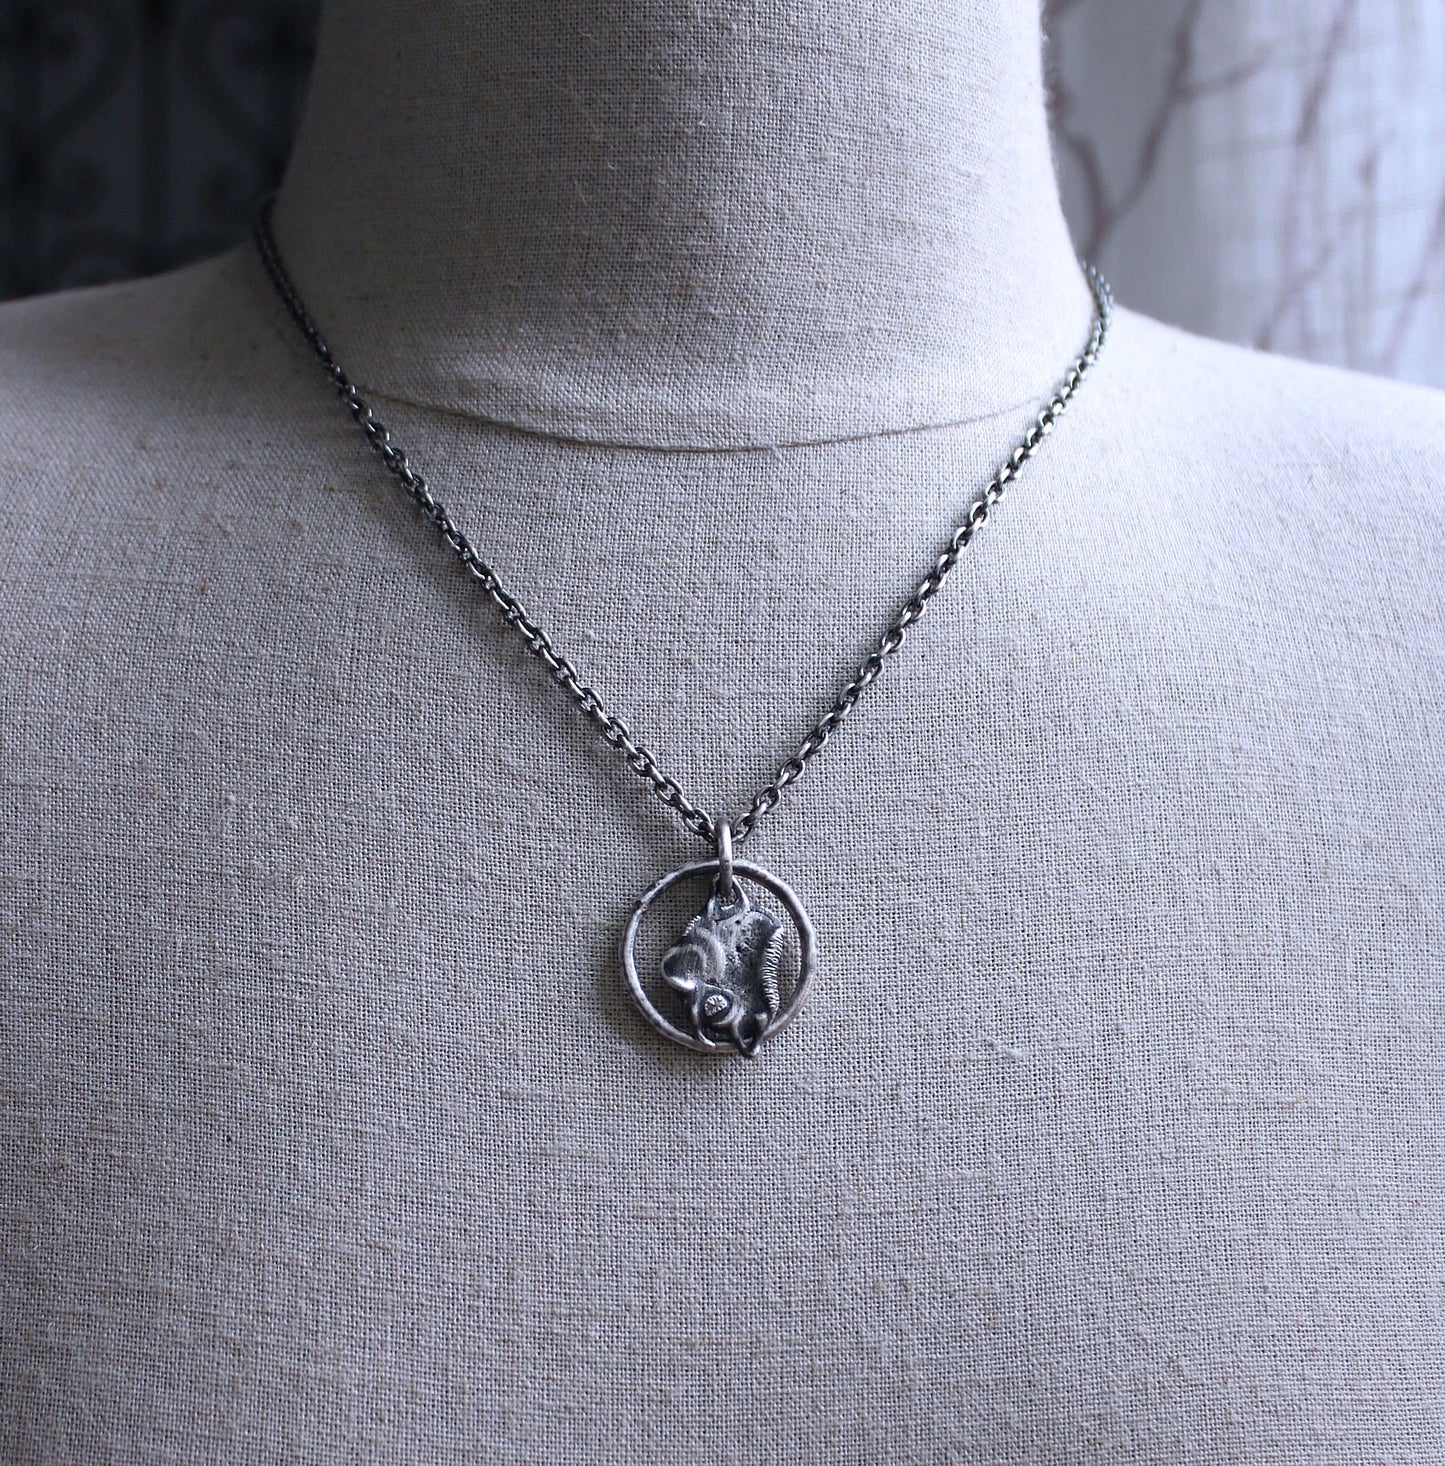 Men's Unique Sterling Silver Pendant Necklace